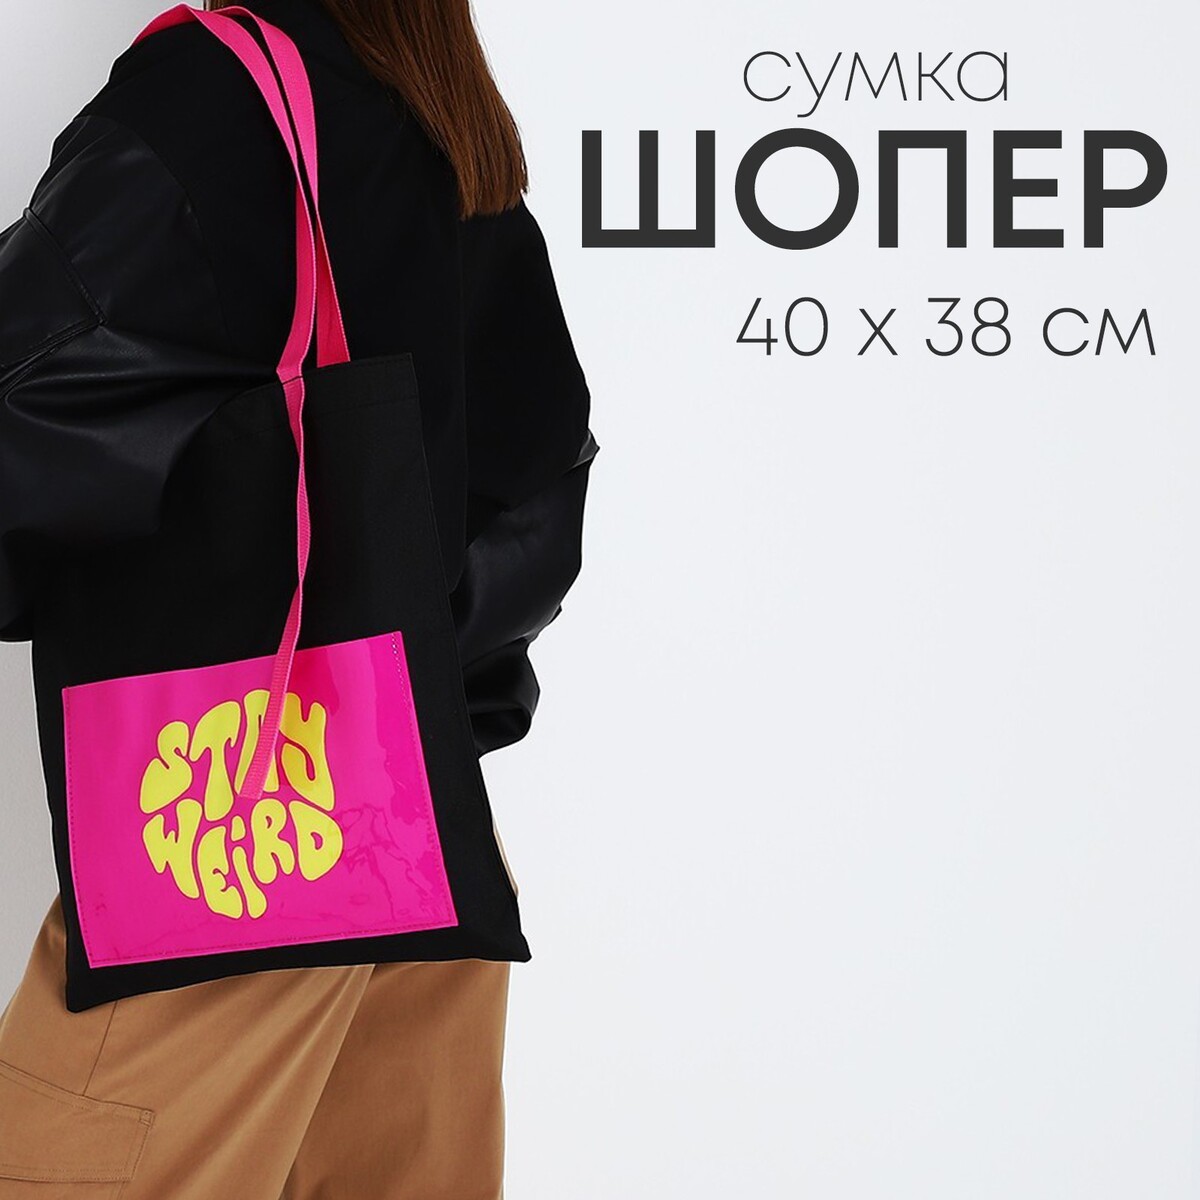 Сумка текстильная шоппер stay weird с карманом, 35 х 0,5 х 40 см, черный сумка в роддом с карманом василек